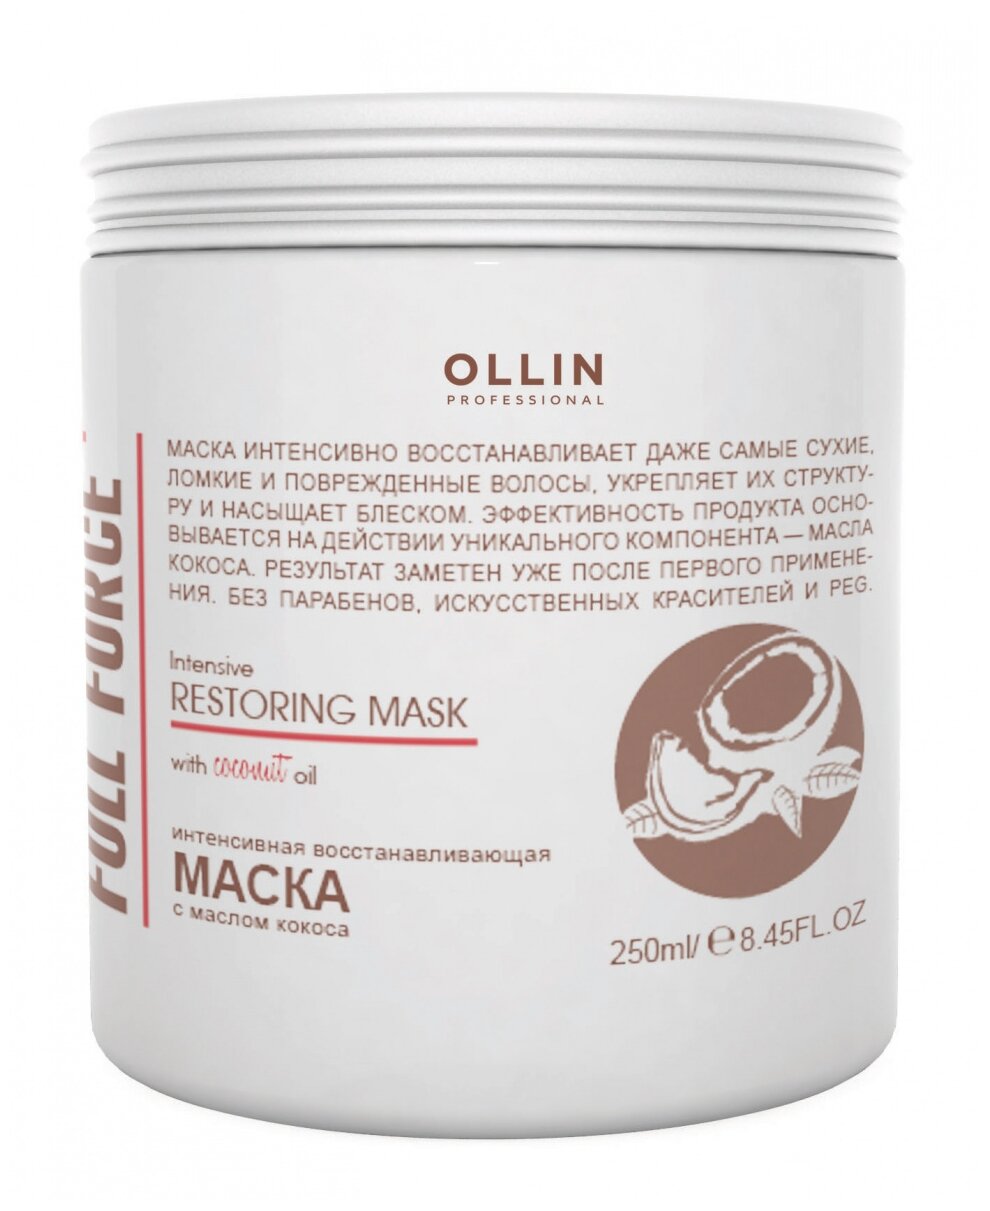 Ollin Professional Интенсивная восстанавливающая маска с маслом кокоса 650 мл (Ollin Professional, ) - фото №1